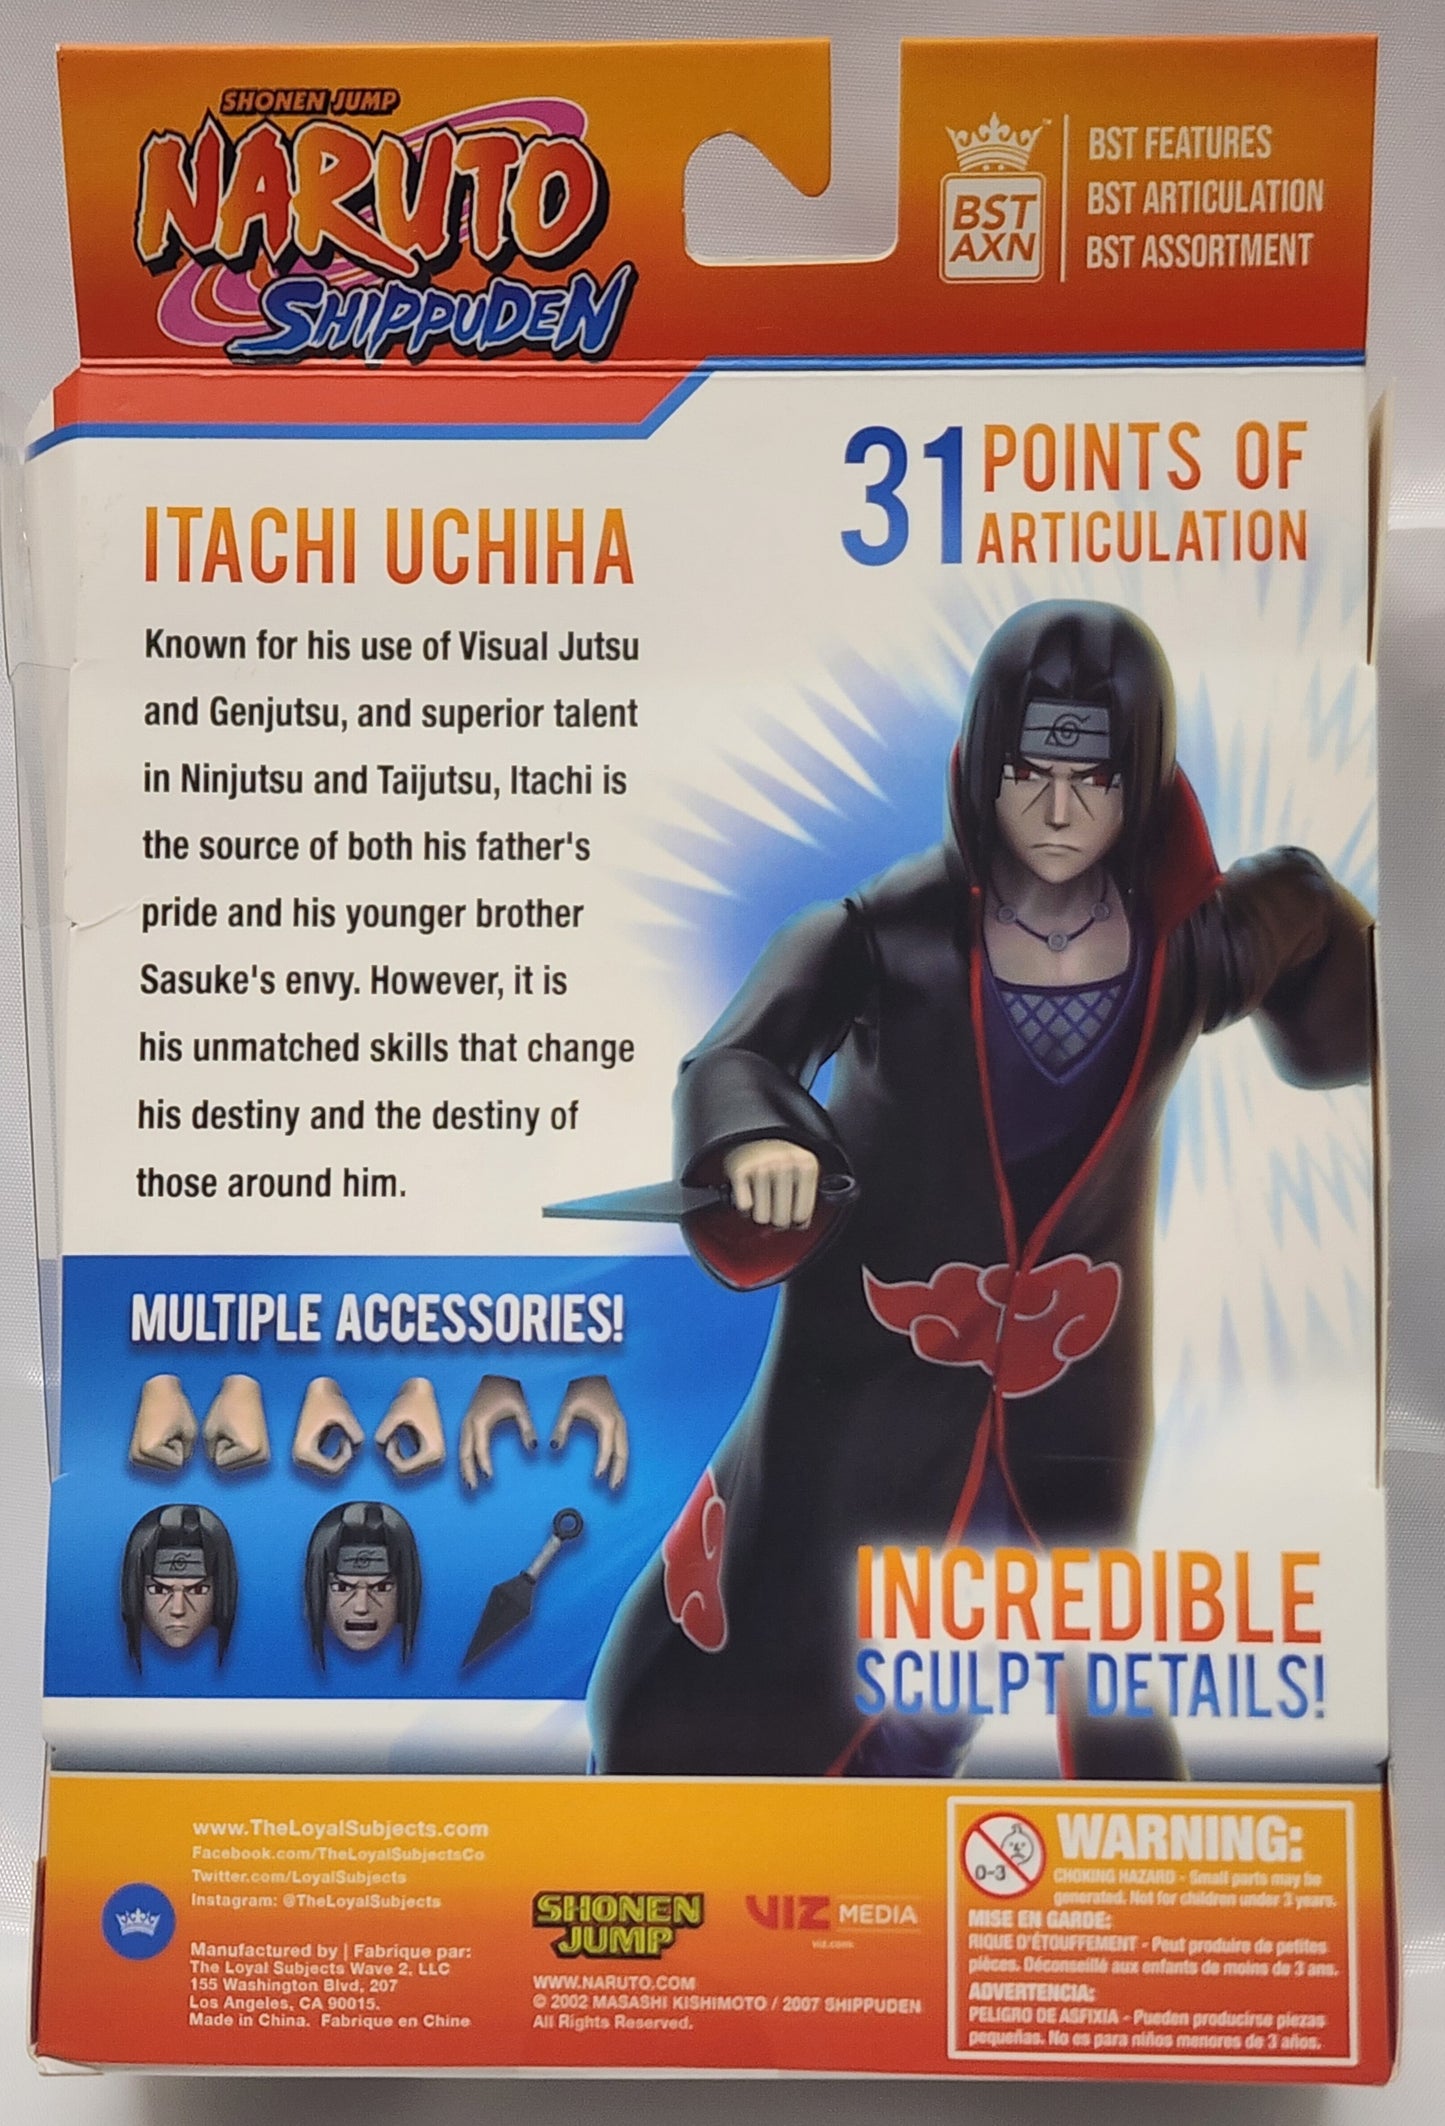 BST AXN Naruto Shippuden. Itachi Uchiha Action Figure